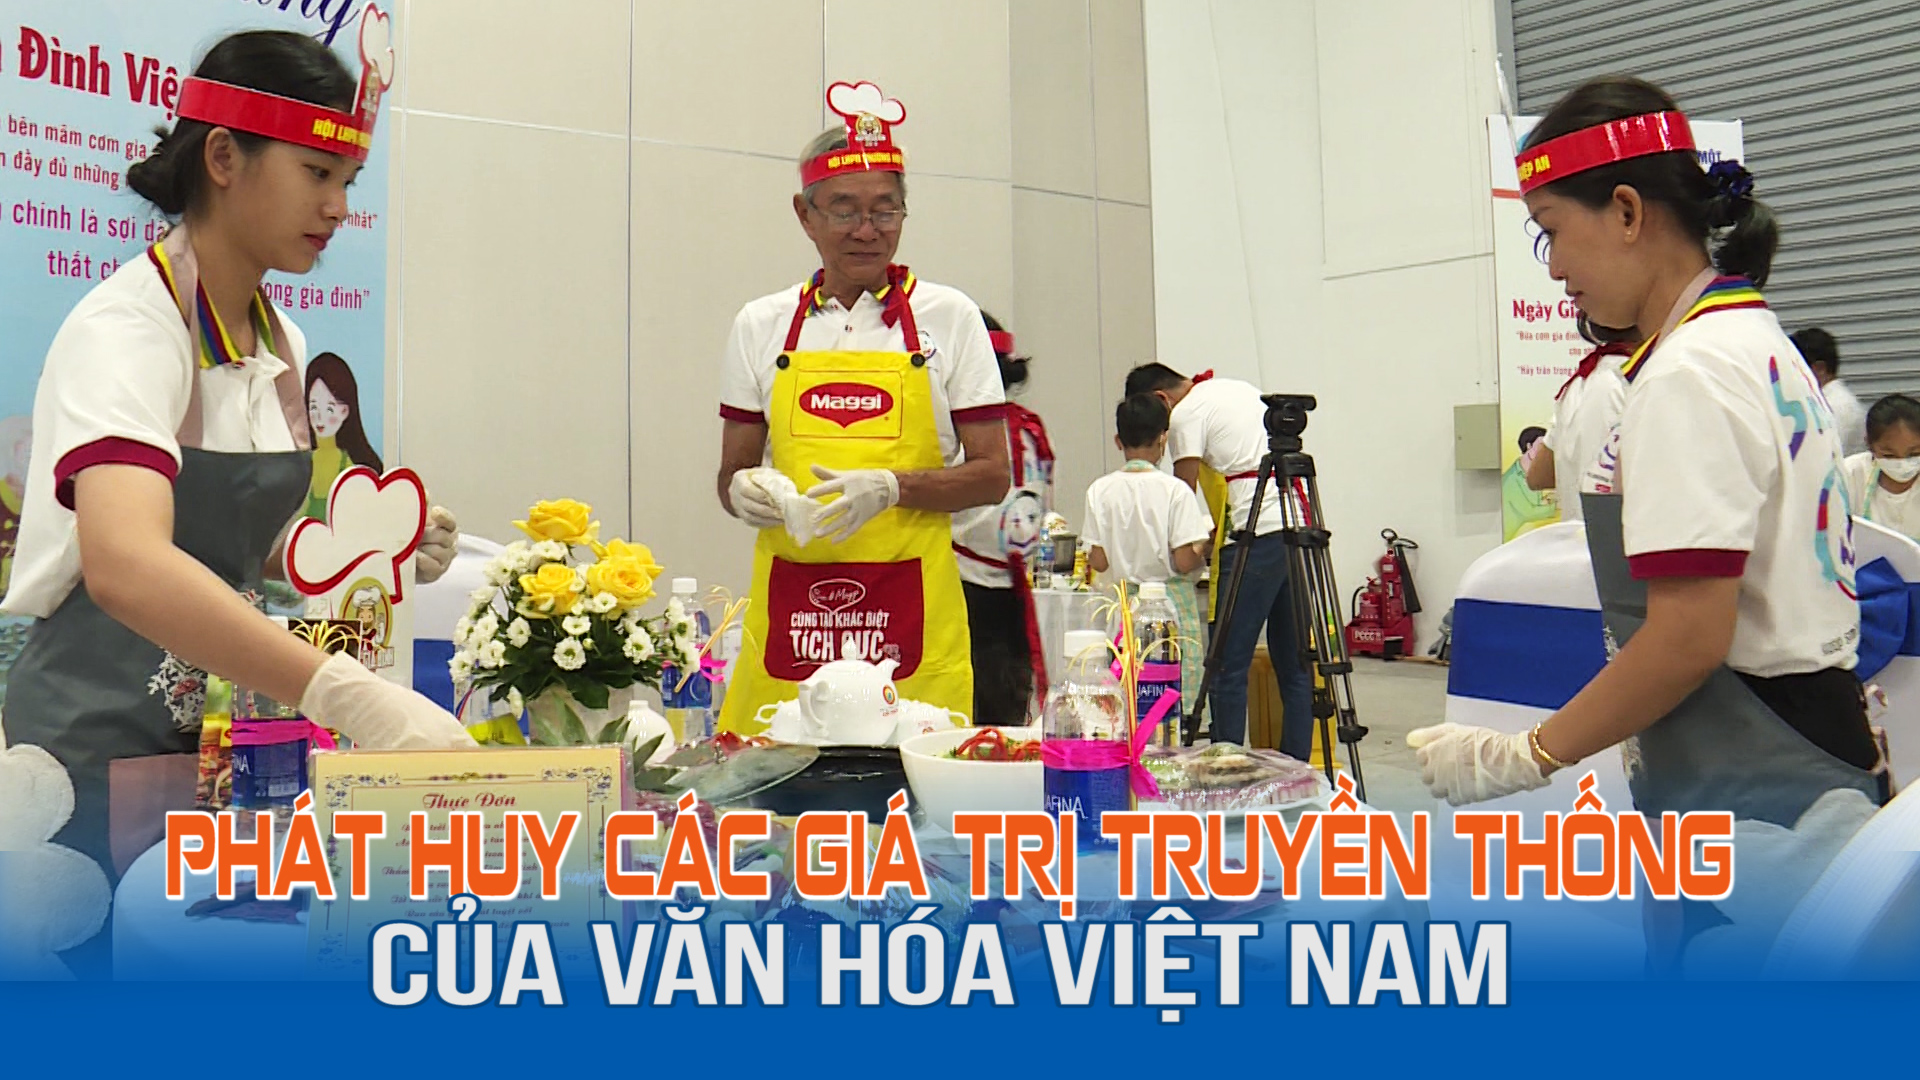 Phát huy các giá trị truyền thống của văn hóa Việt Nam